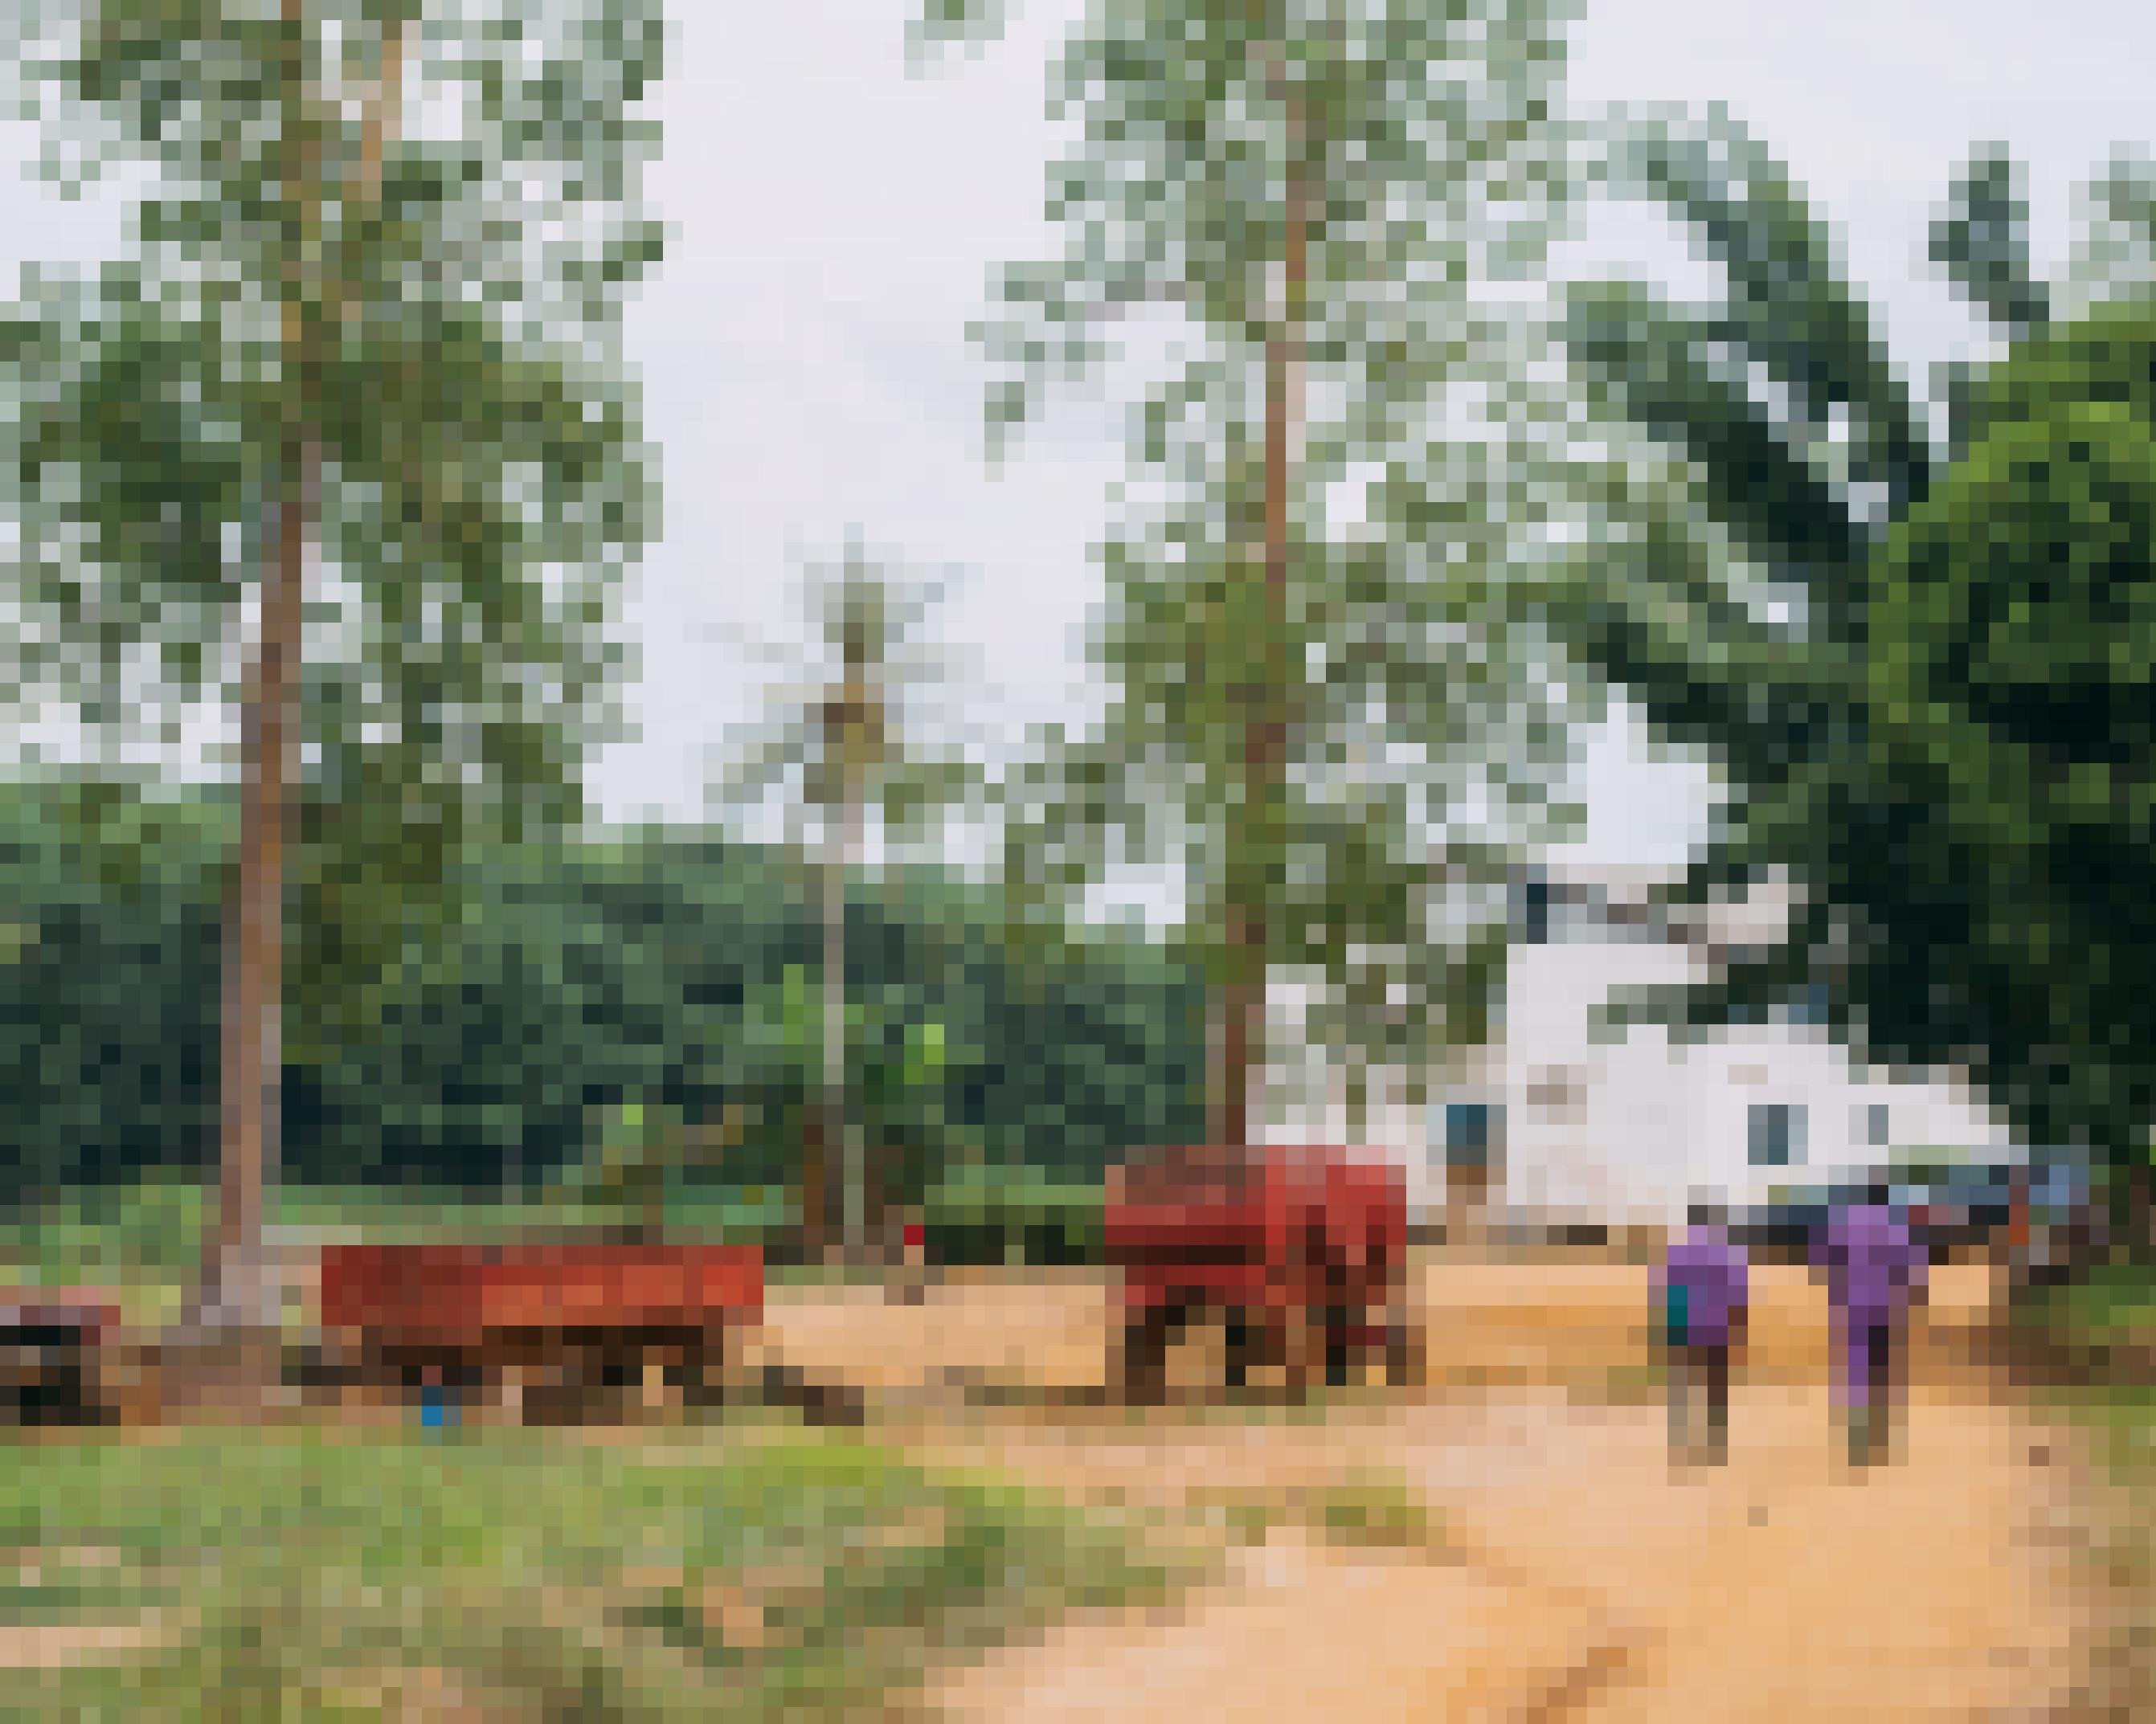 Zwei Arbeiter laufen in Richtung eines einfachen weißen Hauses.  Zwei alte rote Anhänger stehen in der Gegend rum.